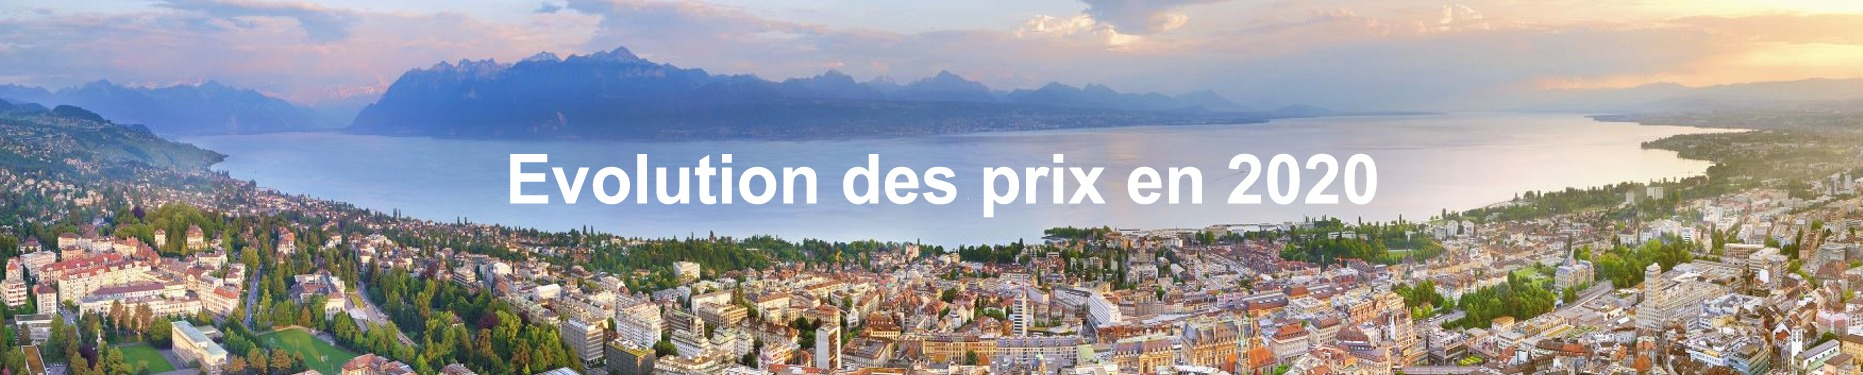 evolution prix m2 immobilier suisse 2020